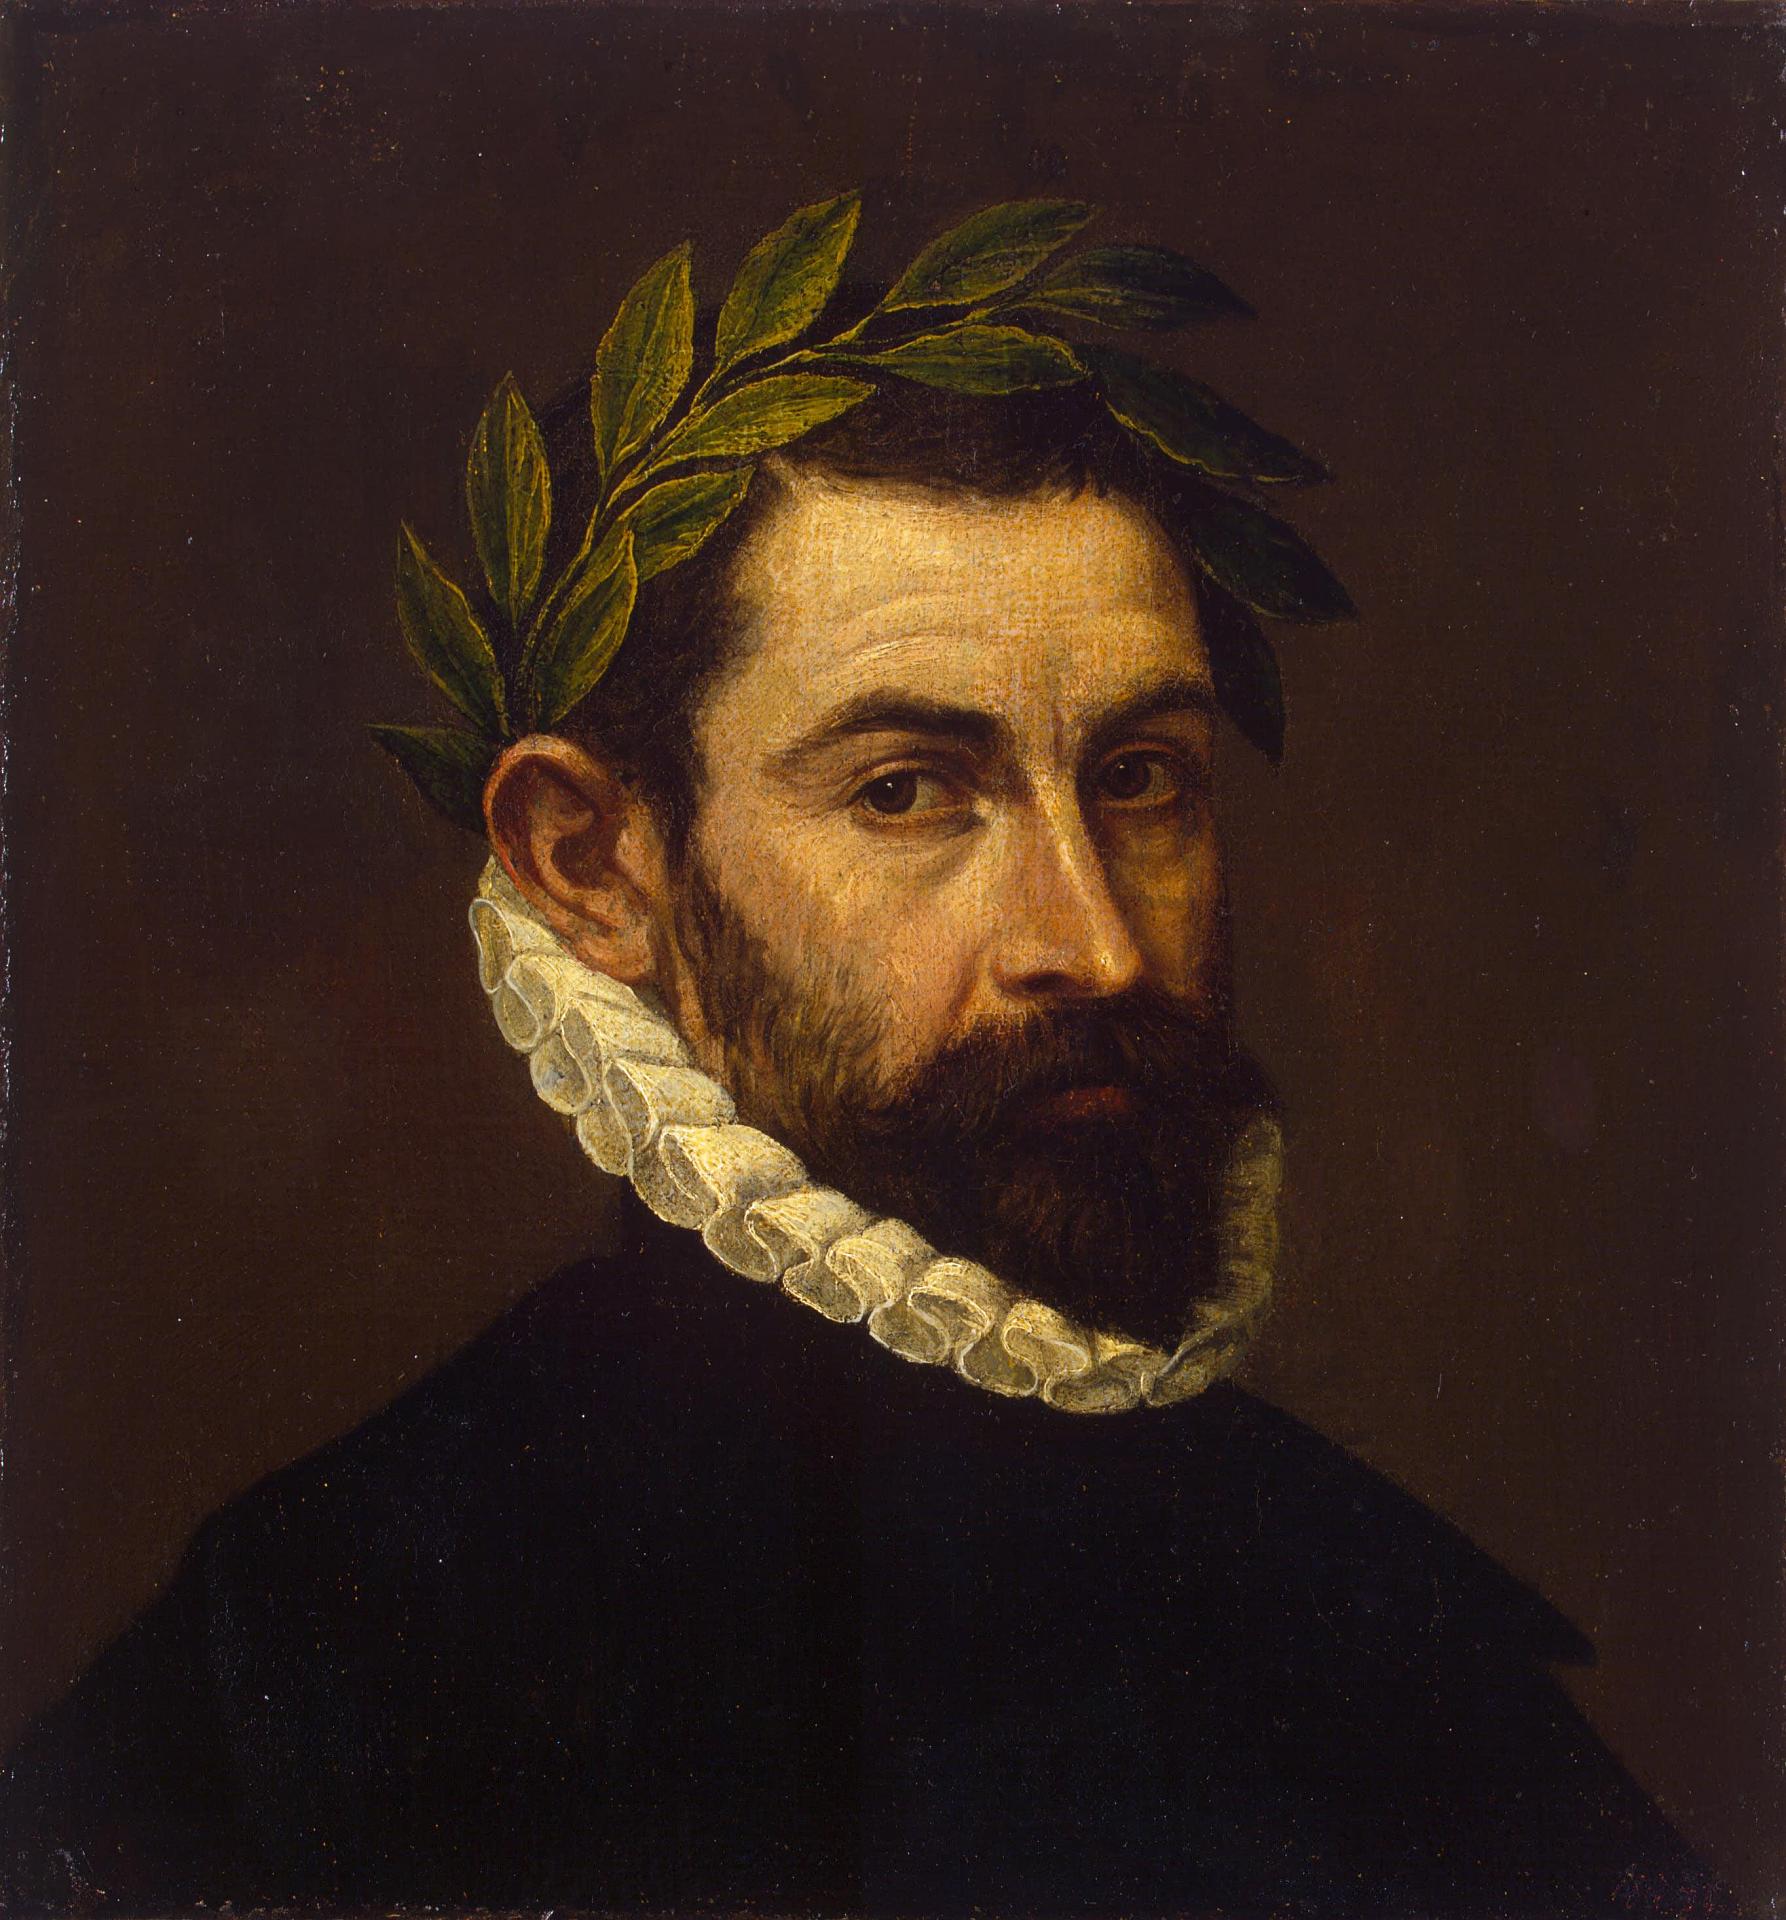 Poet Ercilla y Zuniga by El Greco